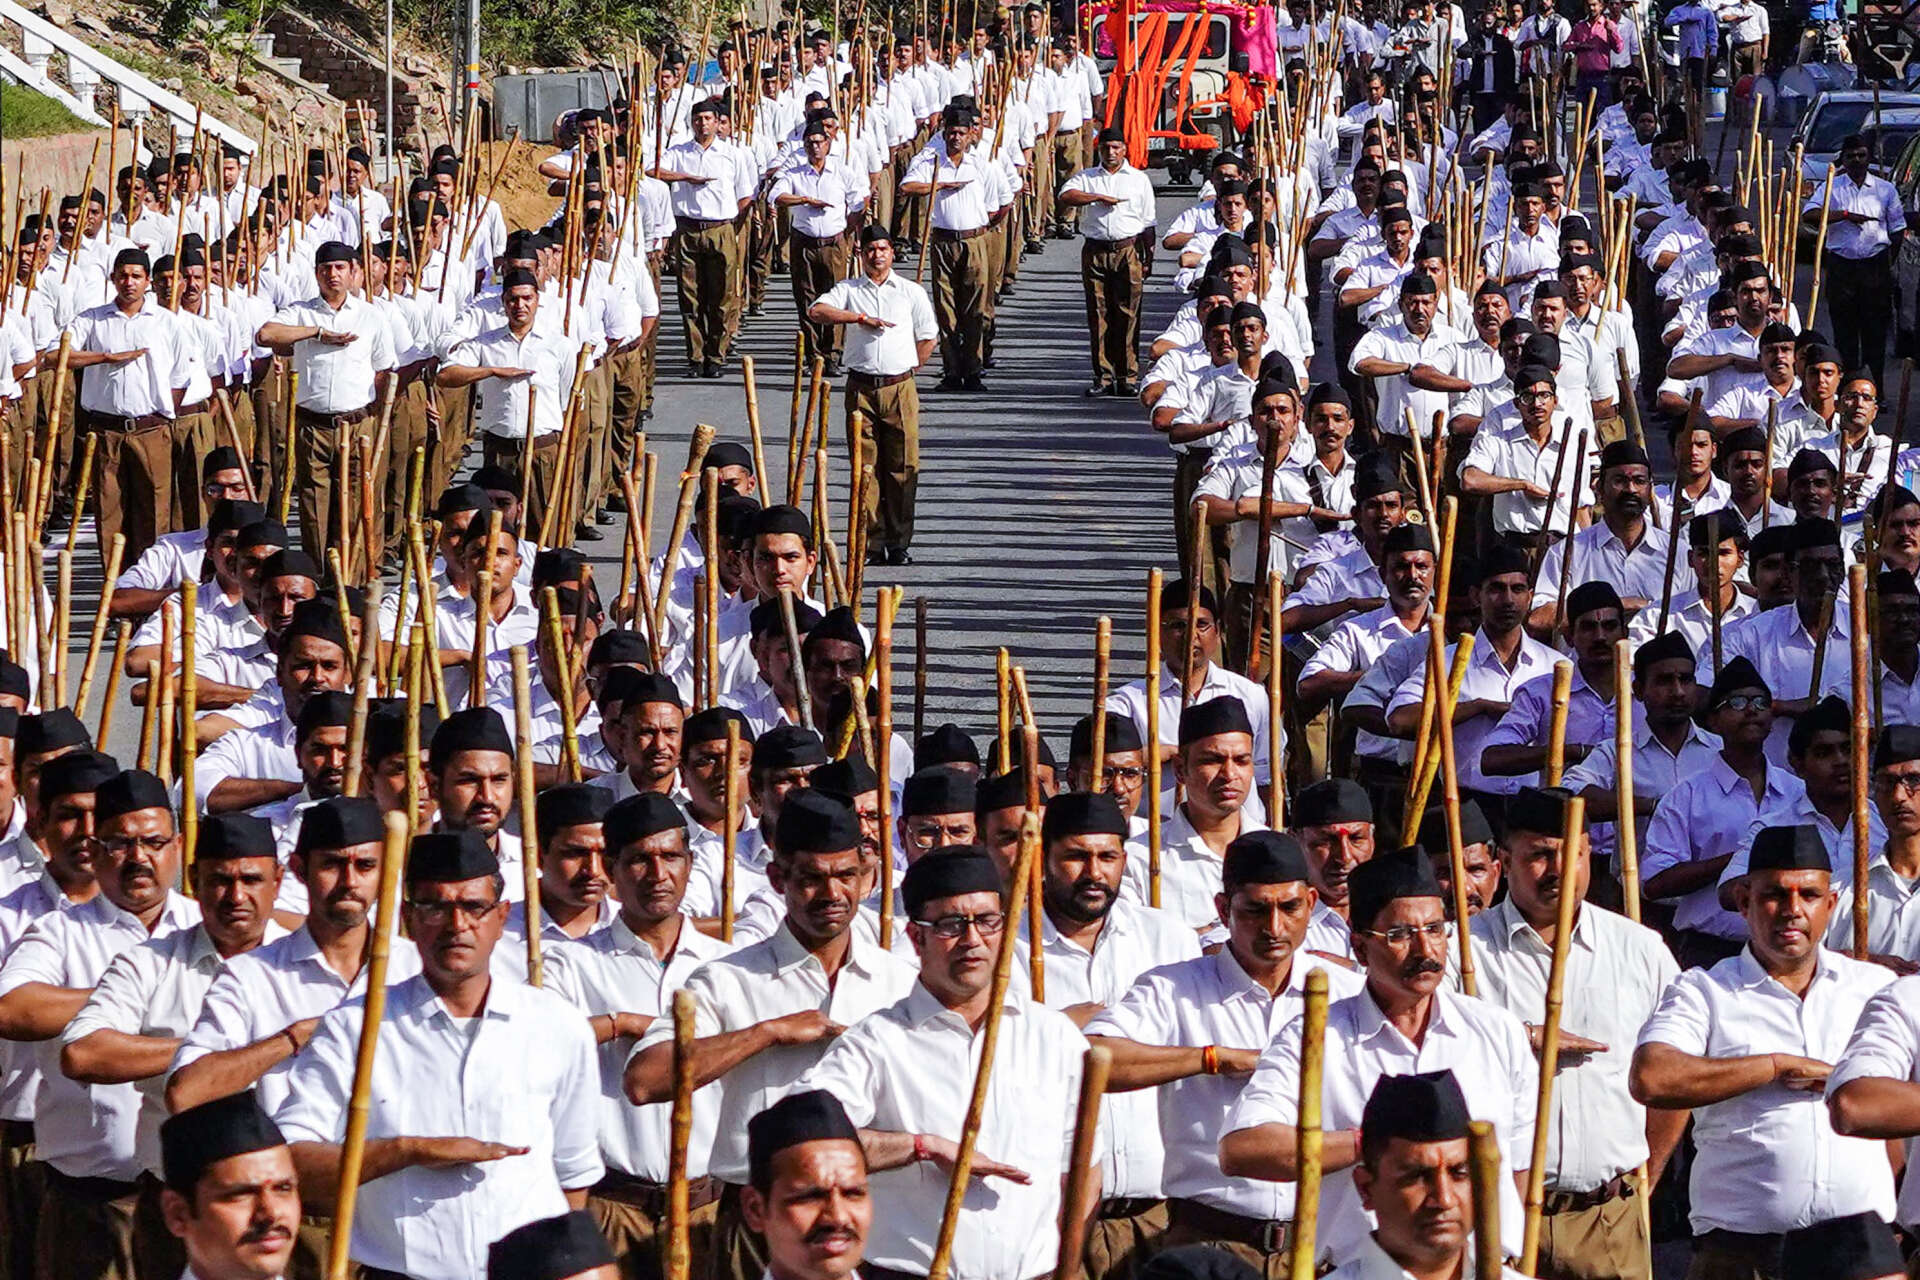 Des membres du Rashtriya Swayamsevak Sangh, une organisation nationaliste hindoue, participent à une marche à Ajmer (Inde), le 12 février 2023.